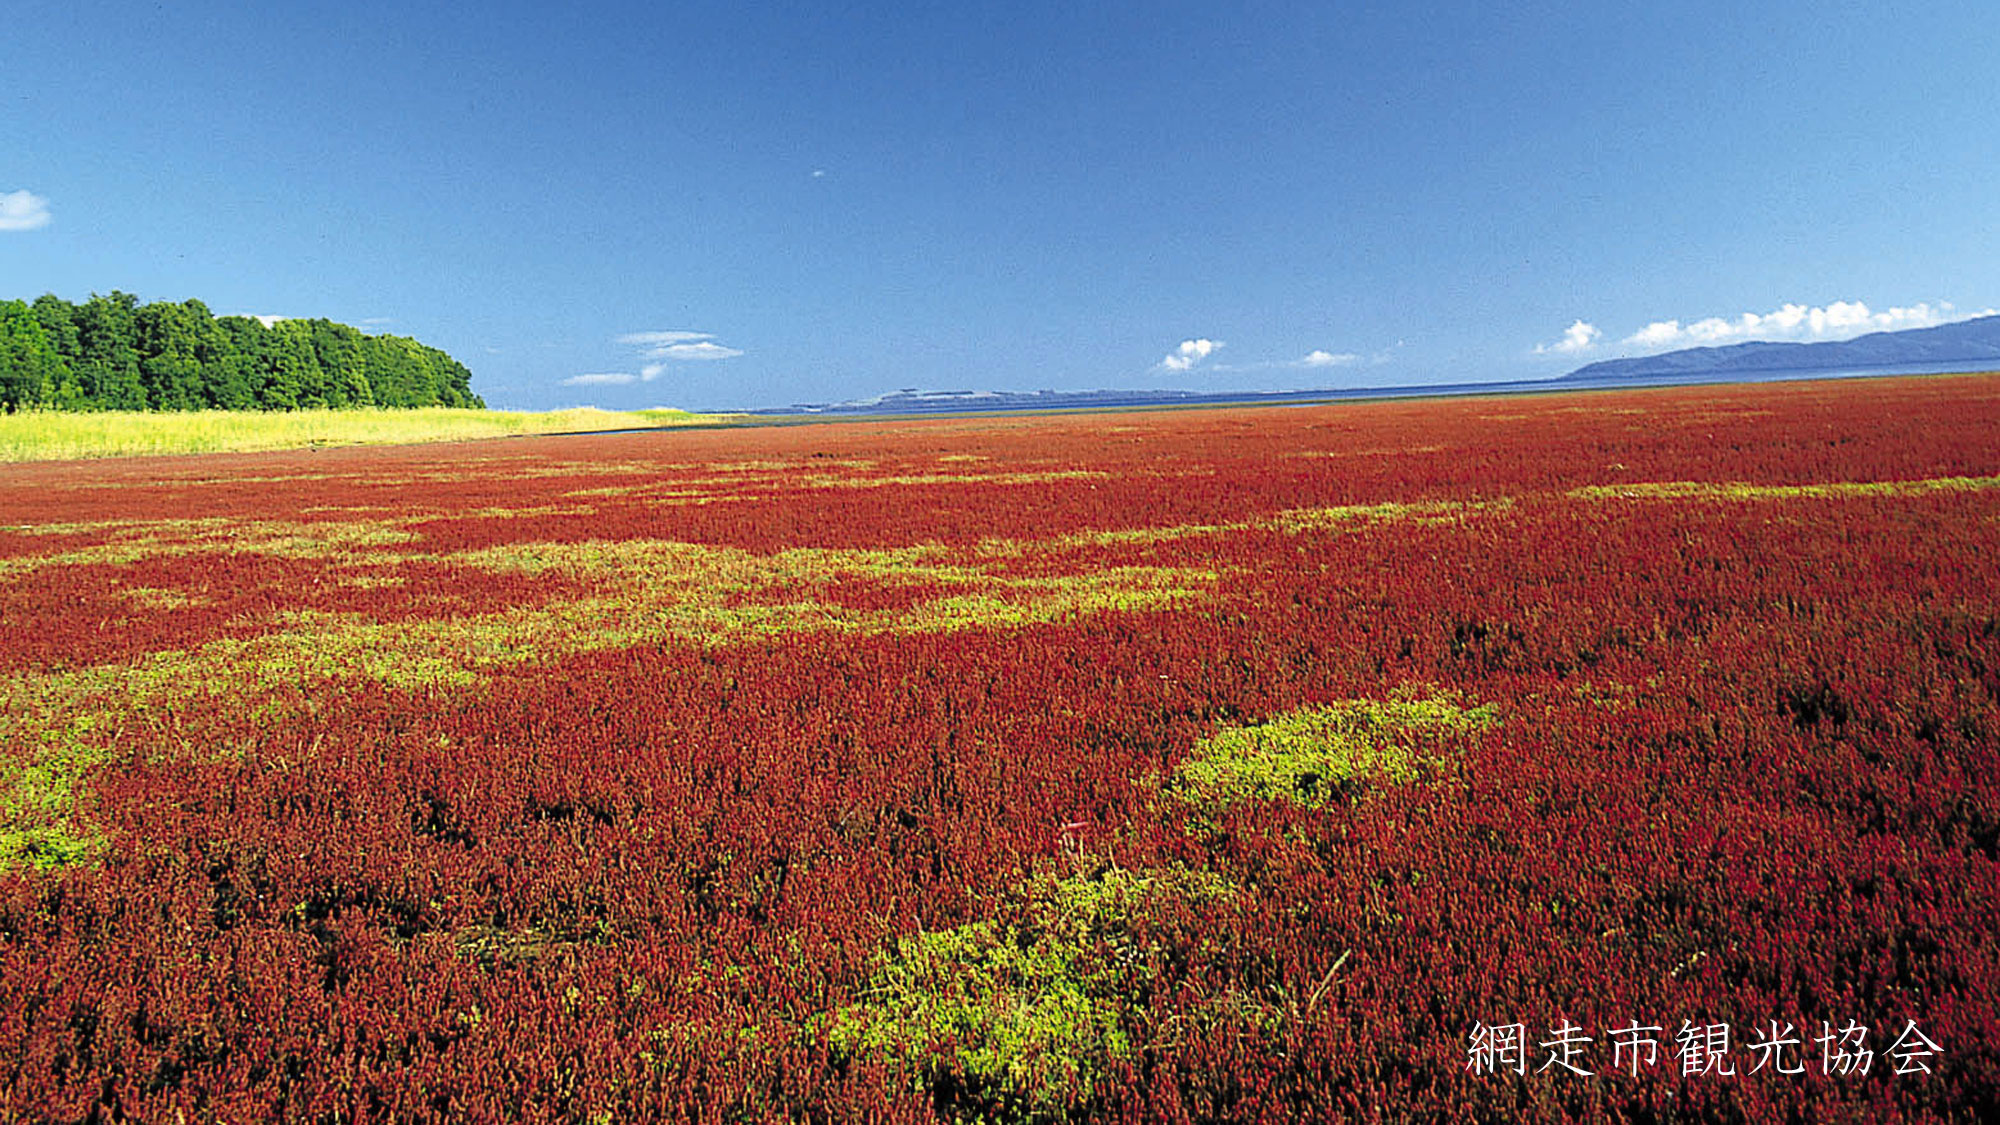 *［能取湖］当館より車で約17分。広大に広がる湿地帯が真っ赤に染まる秋。例年見頃は9月中旬～下旬